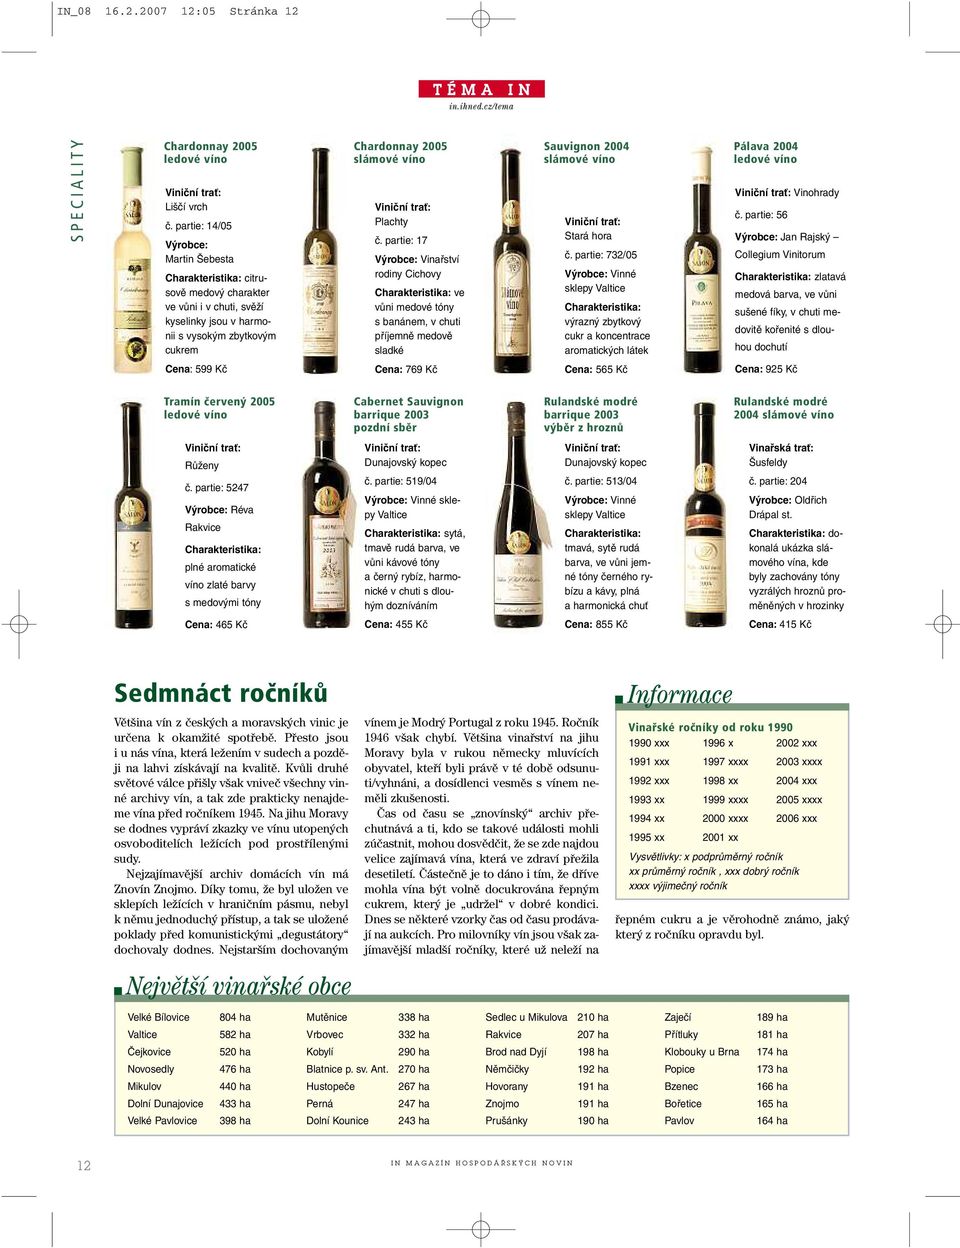 partie: 17 Výrobce: Vinařství rodiny Cichovy ve vůni medové tóny sbanánem, vchuti příjemně medově sladké Sauvignon 2004 slámové víno Stará hora č.